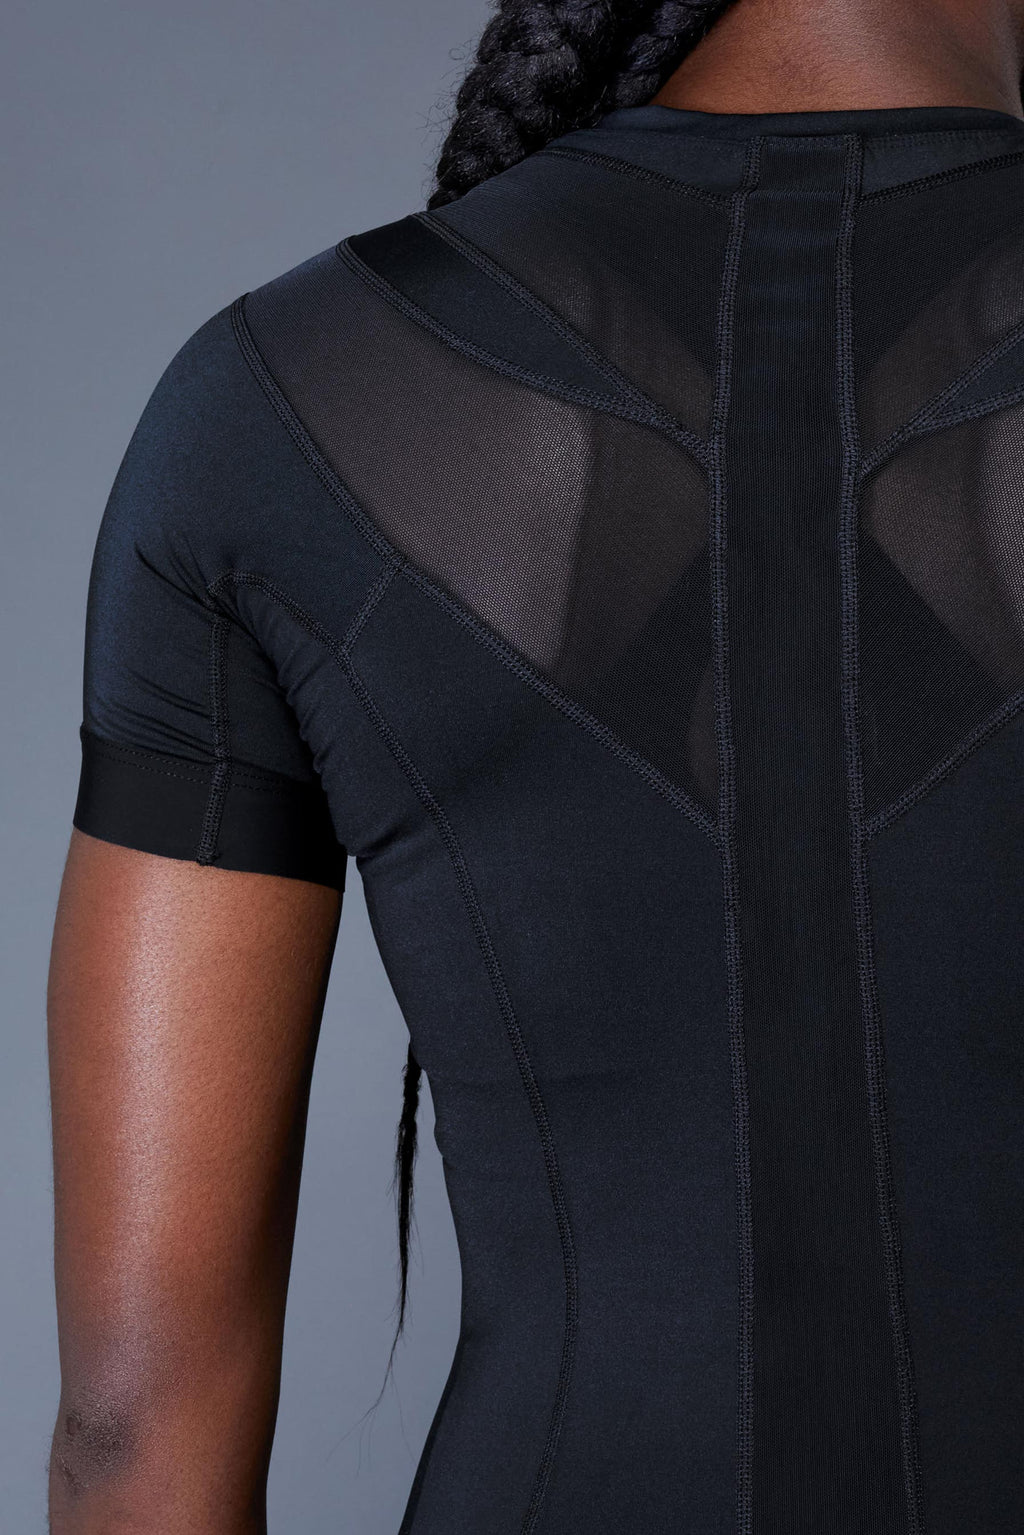 Women's Posture Shirt™ Zipper (Black)